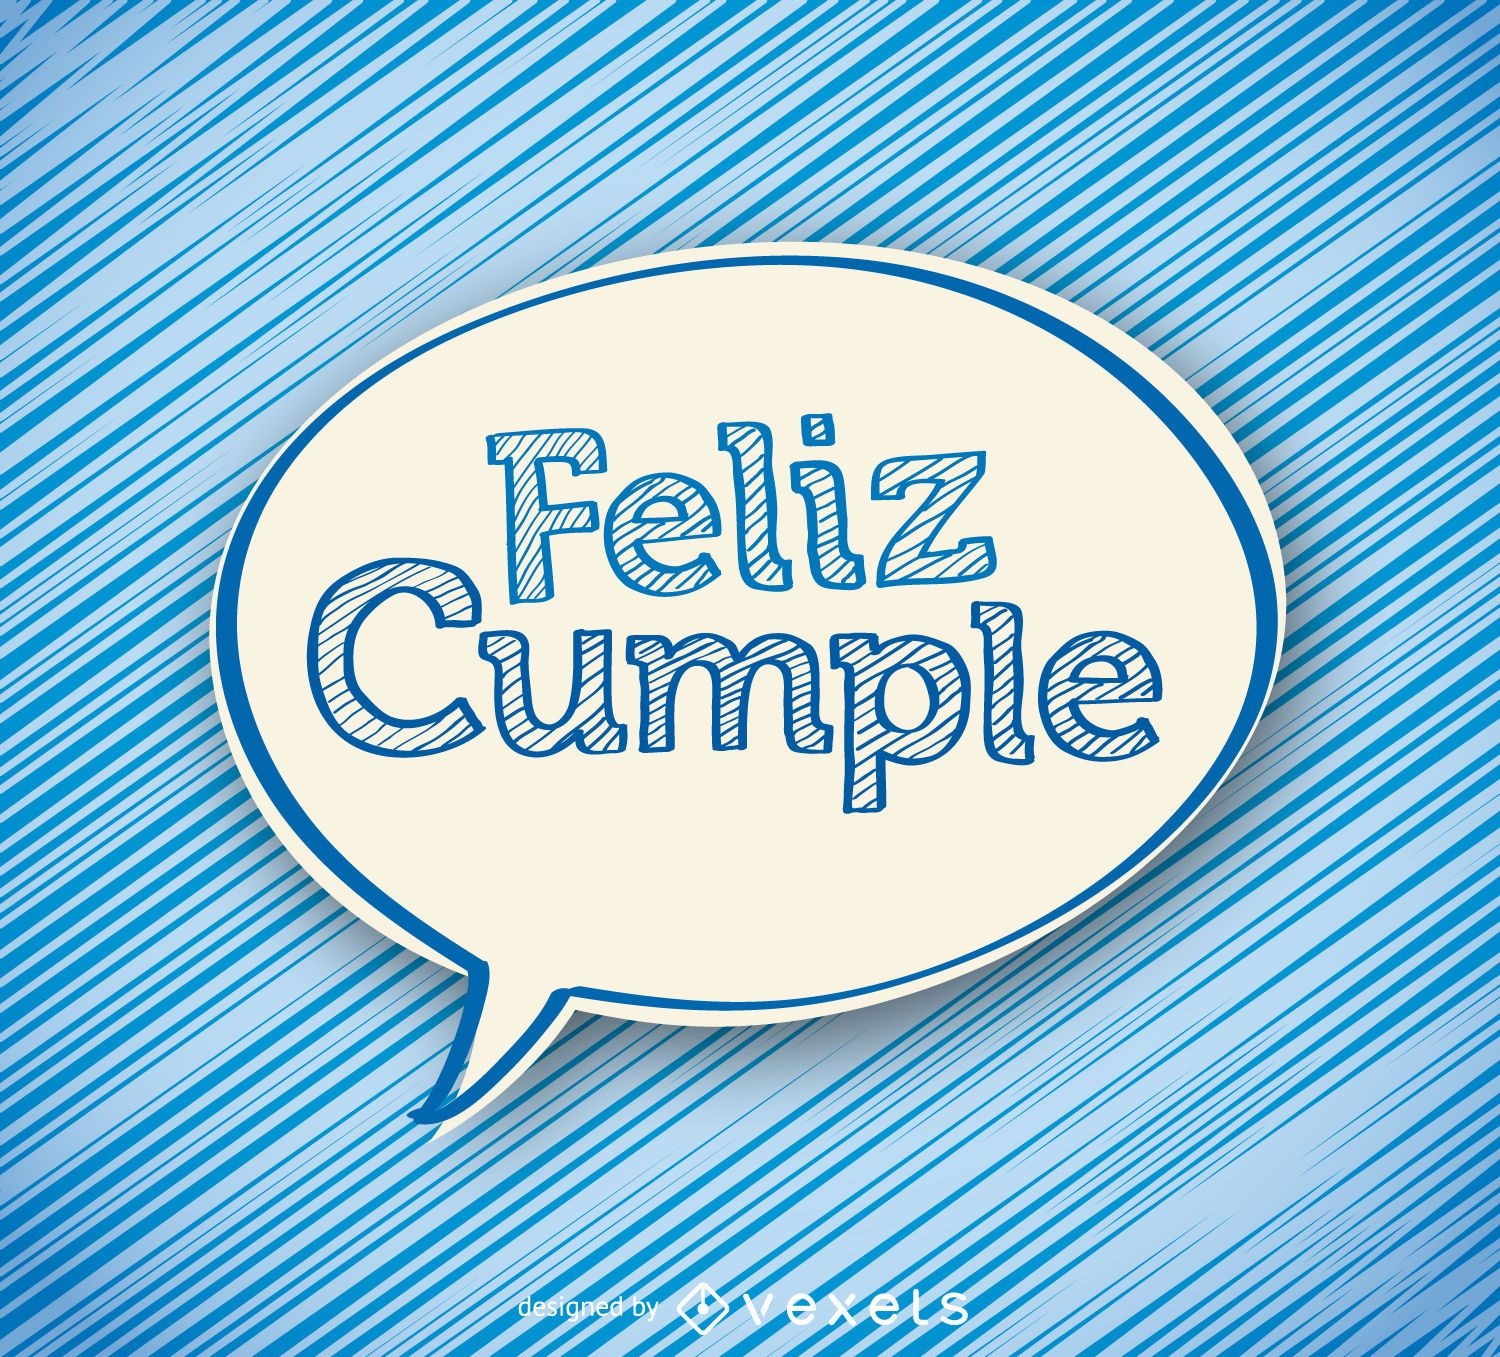 Source Feliz Cumpleanos Balloons Spanish Happy Birthday